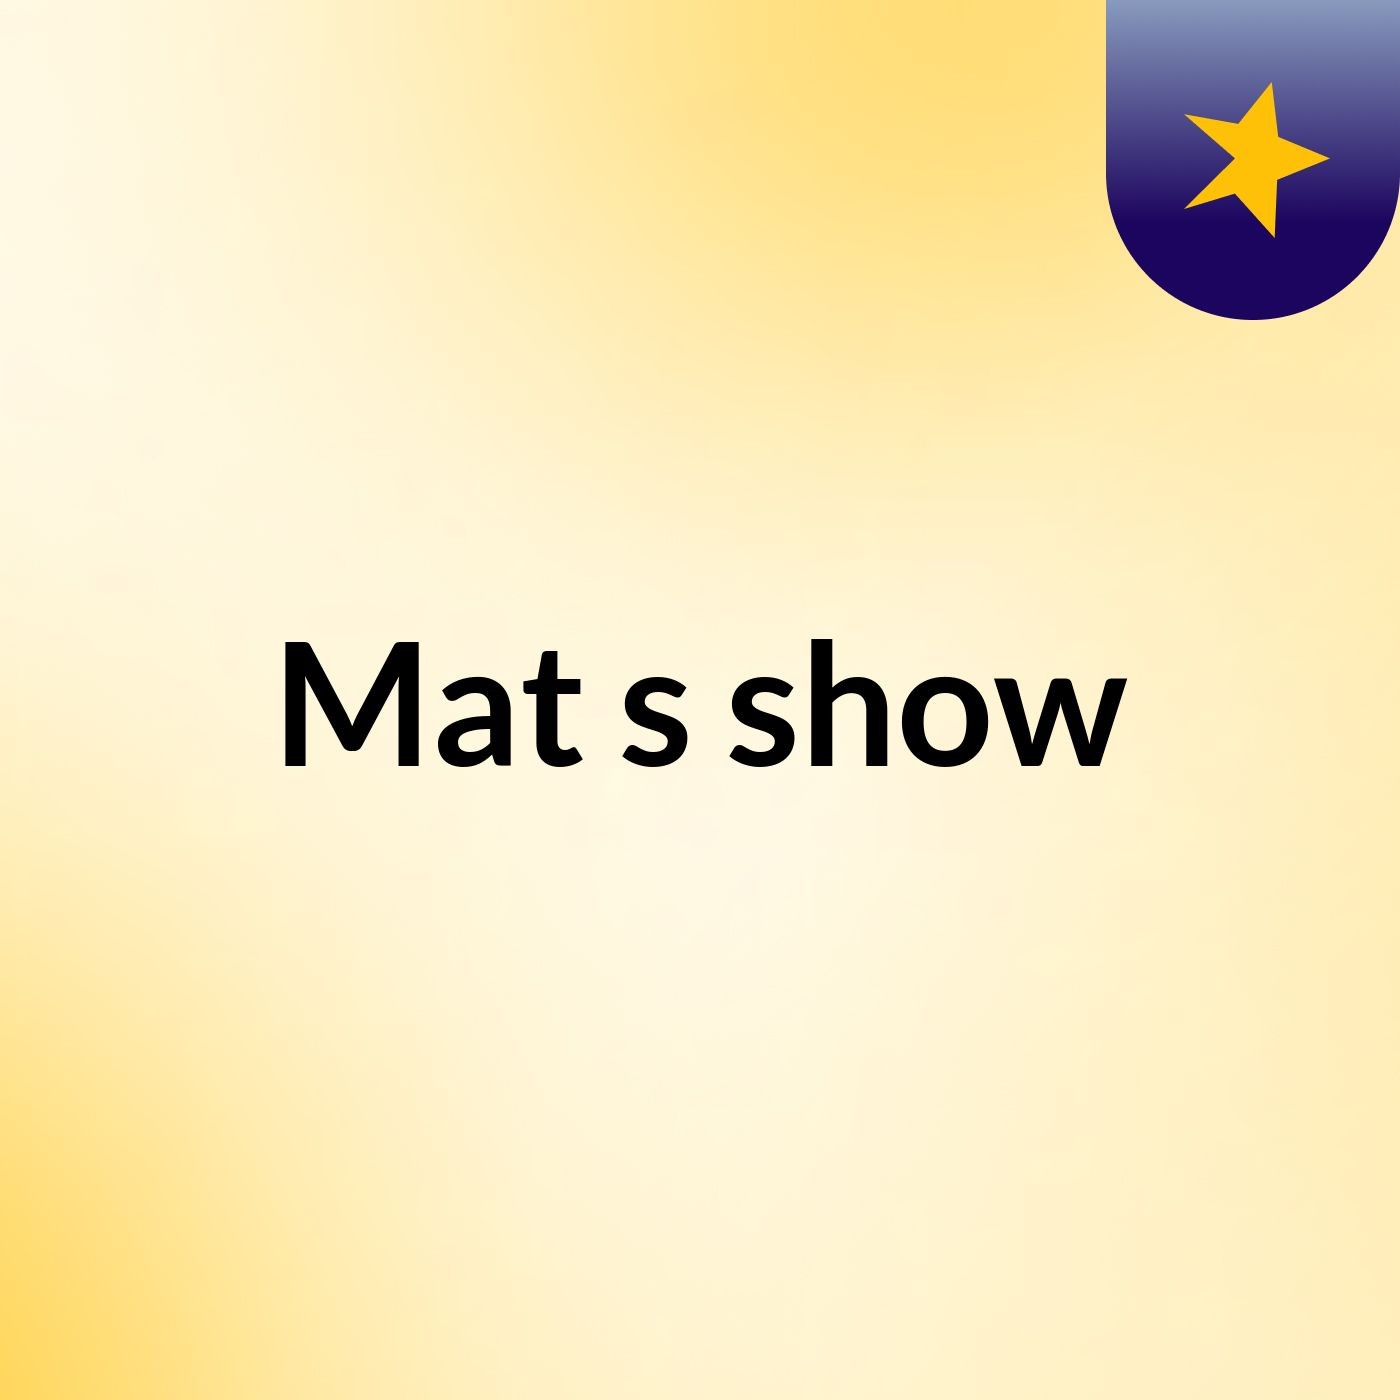 Mat's show